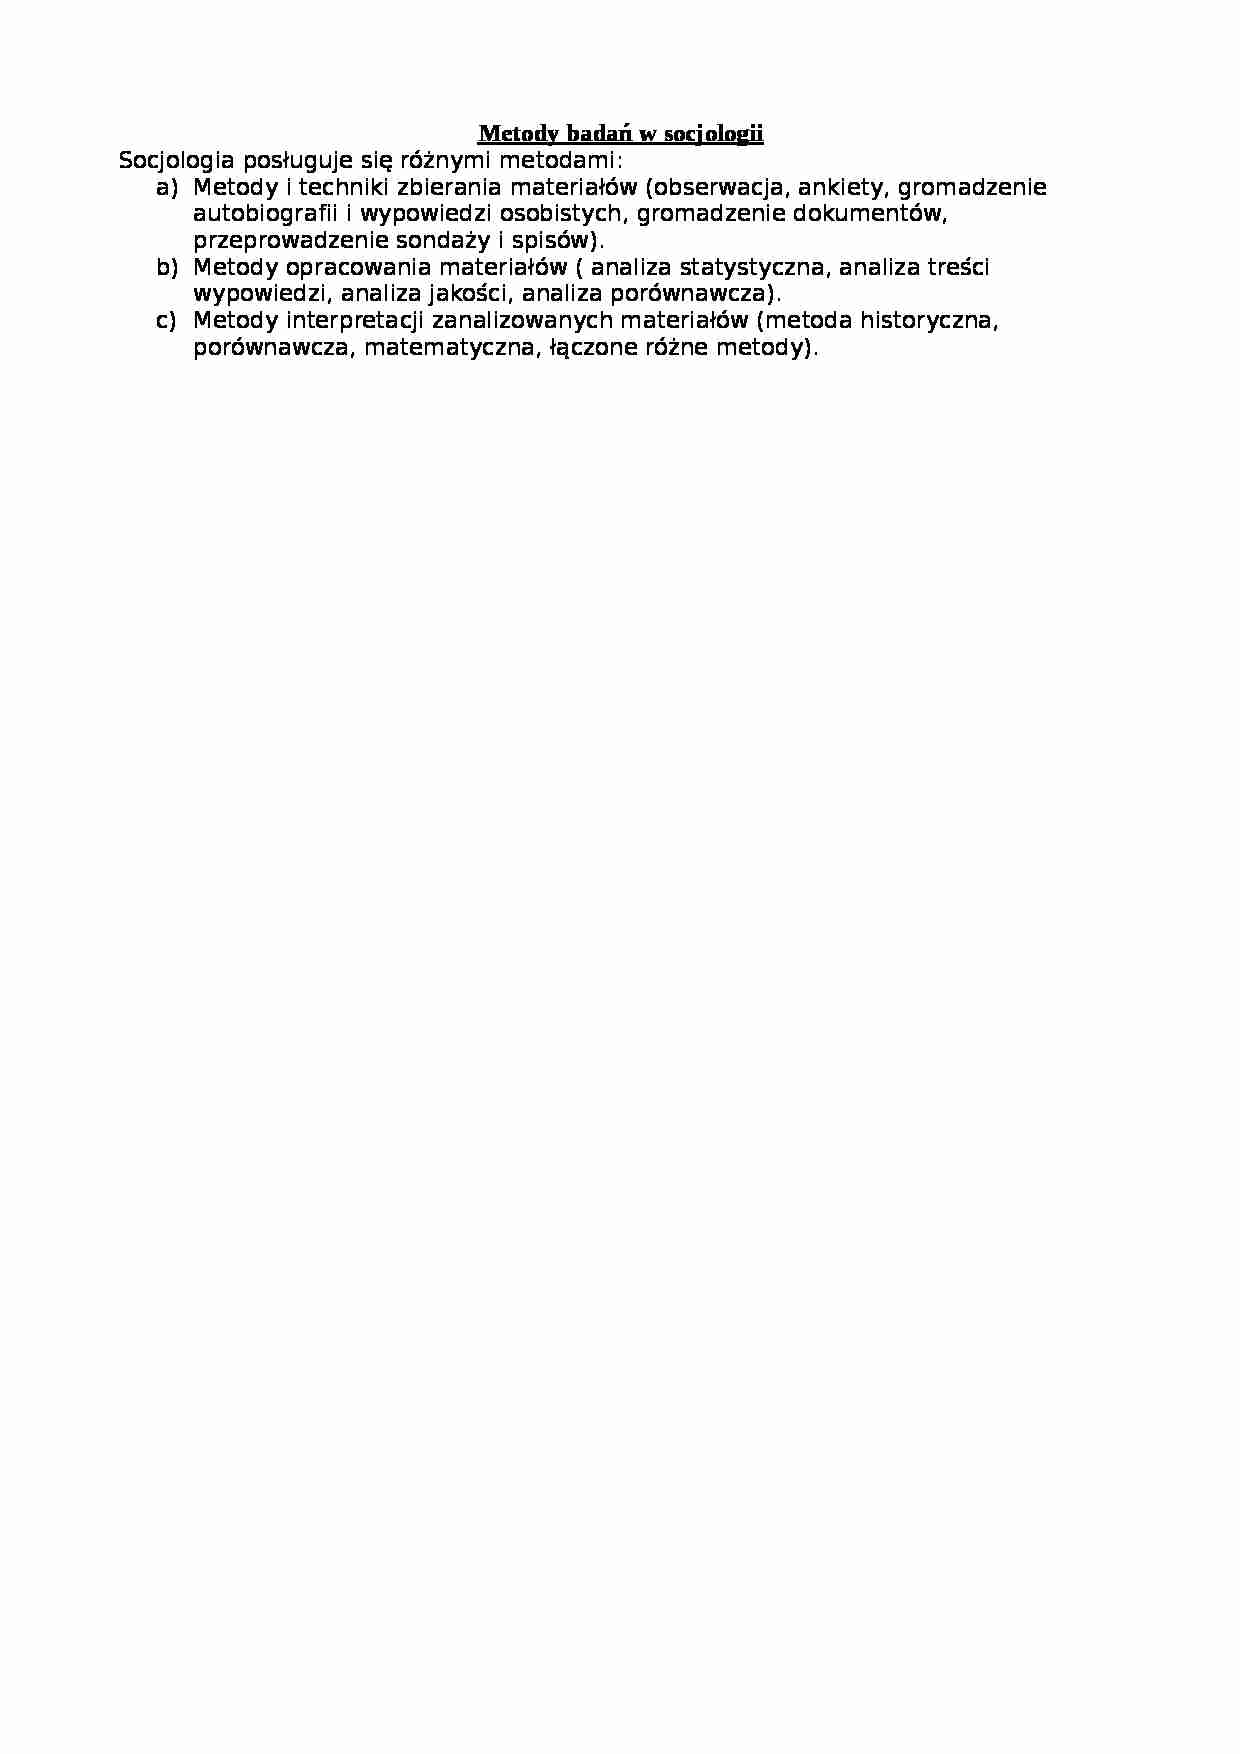 Metody badań w socjologii-opracowanie - strona 1